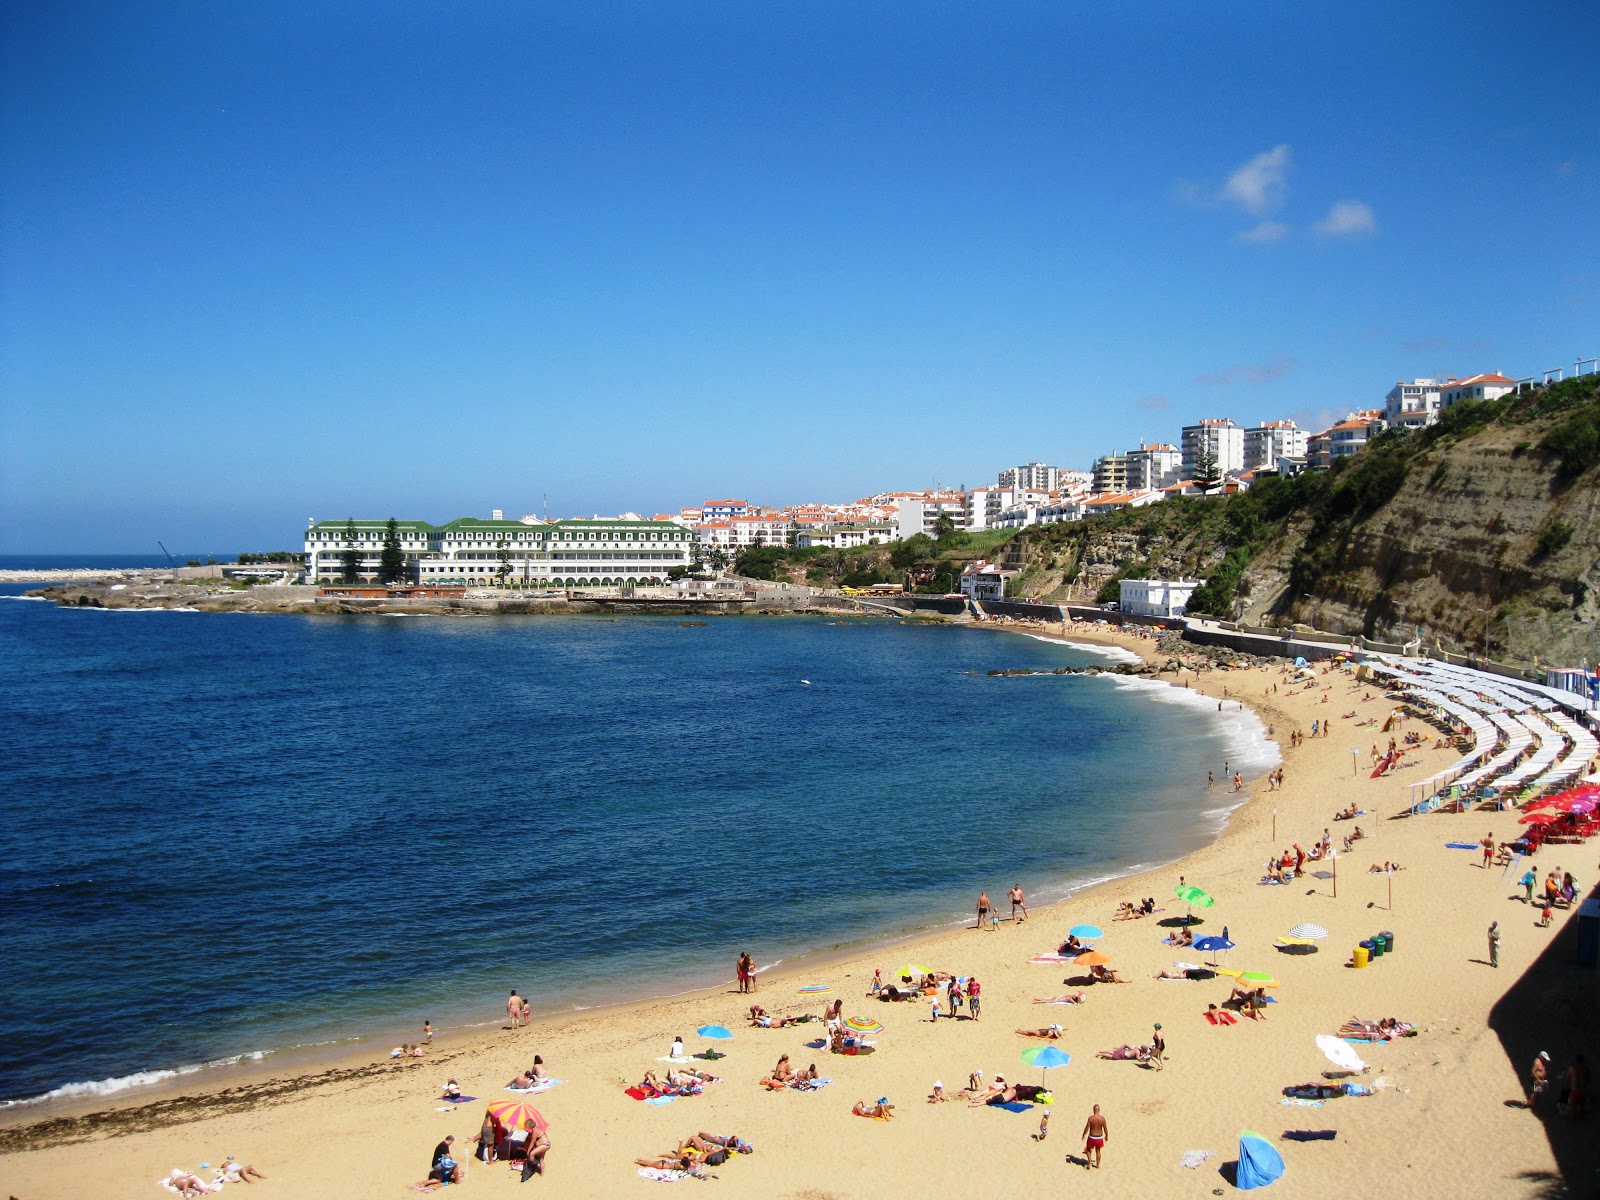 Praia da Baleia'in fotoğrafı - rahatlamayı sevenler arasında popüler bir yer